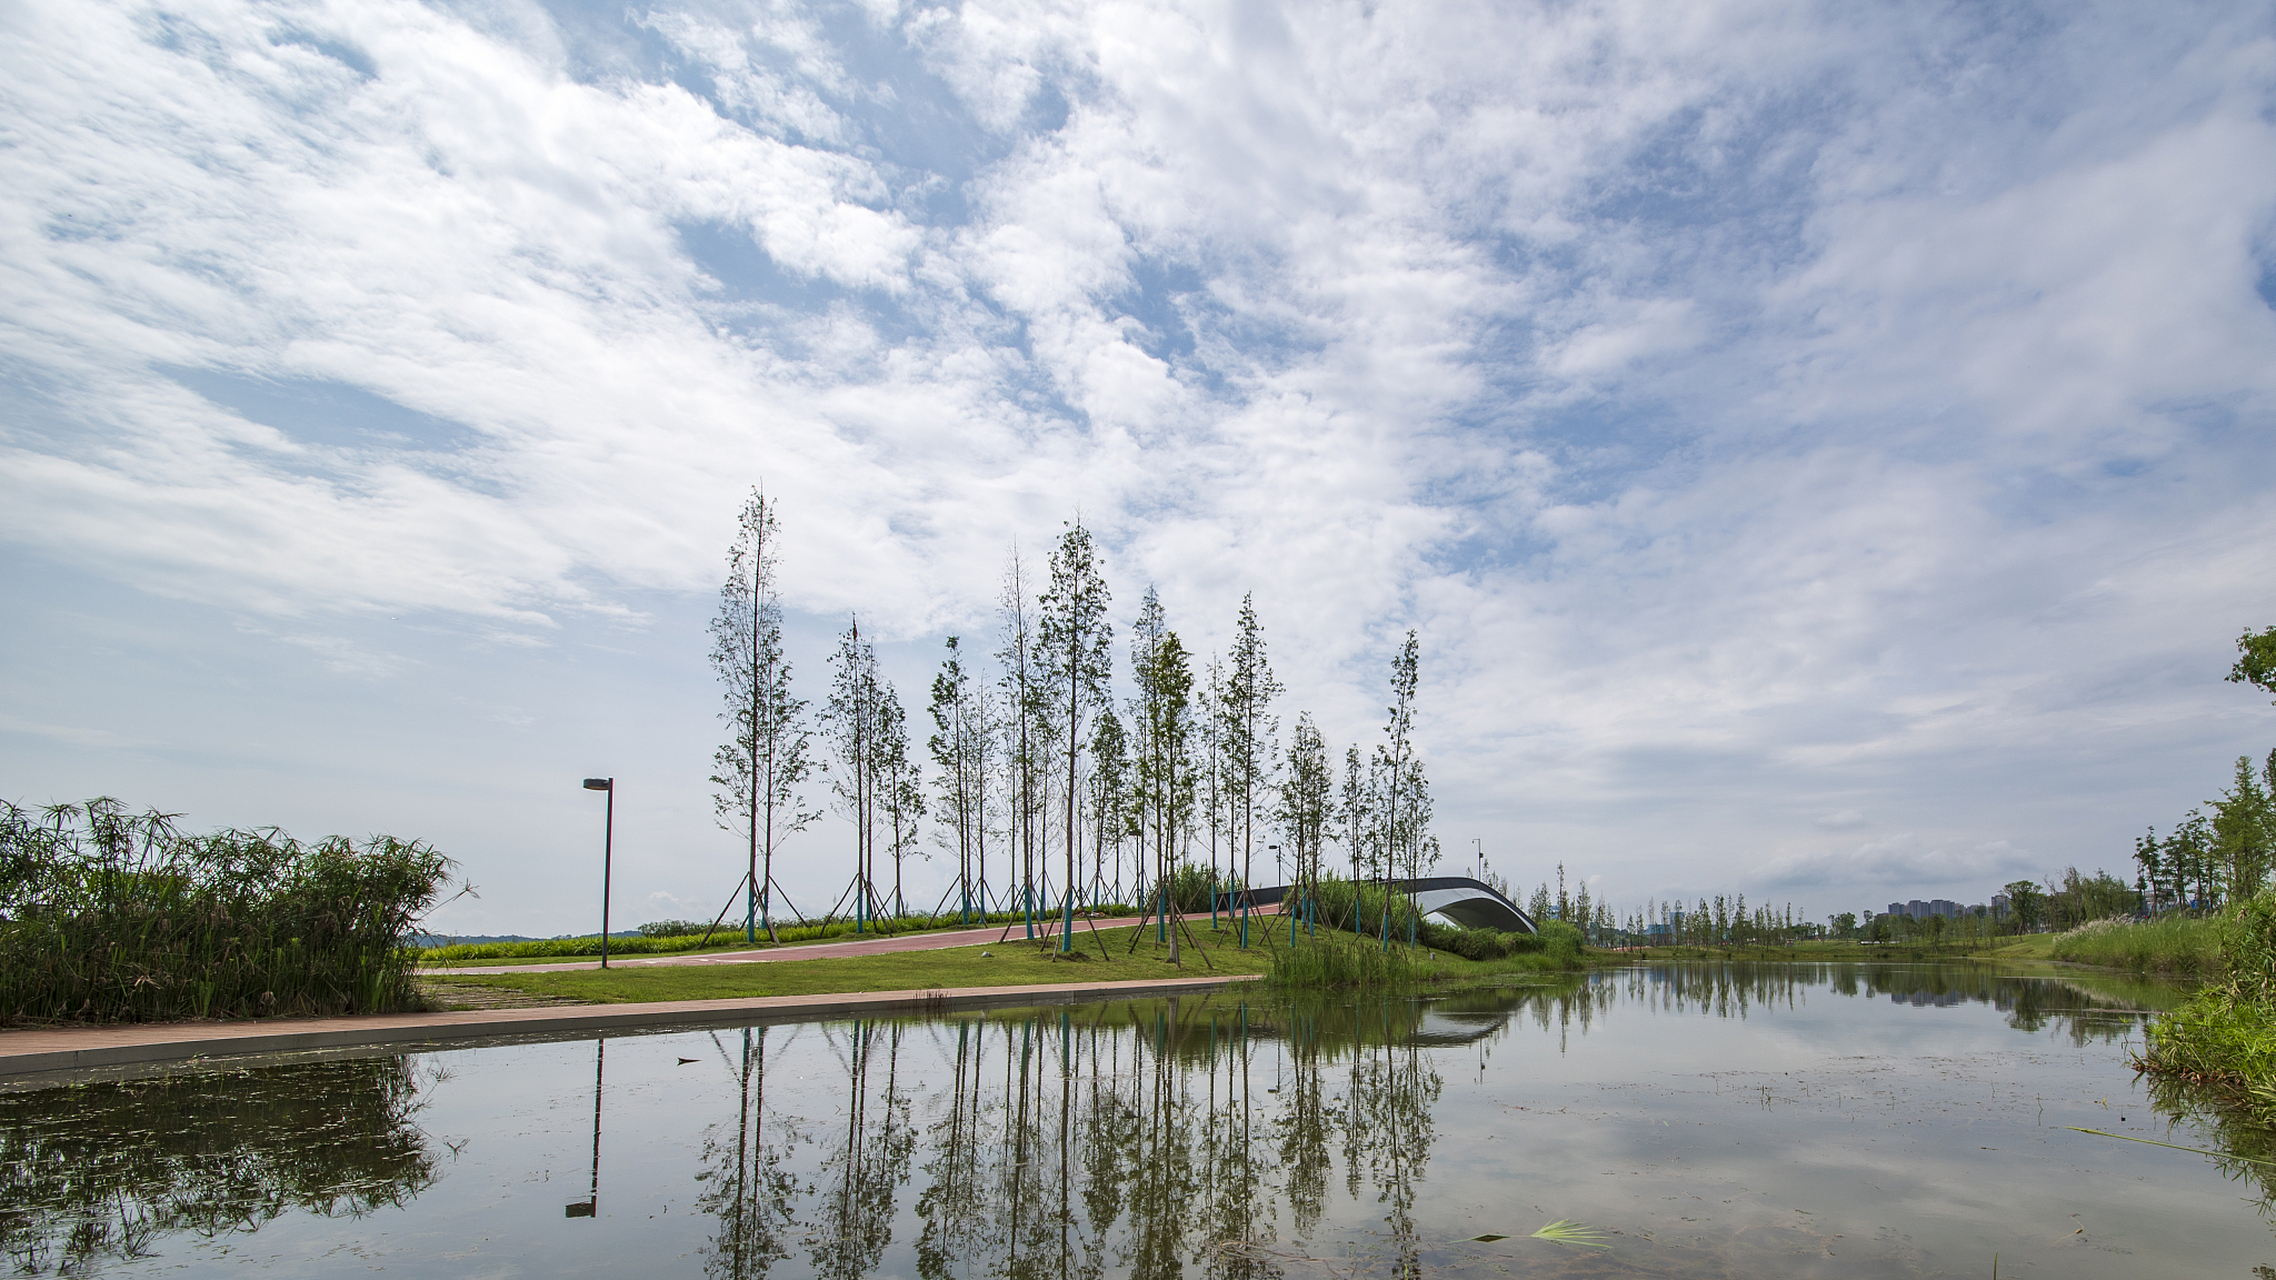 陶冲湖公园位于安徽省合肥市的美丽公园,占地面积约为1600亩,其中湖面